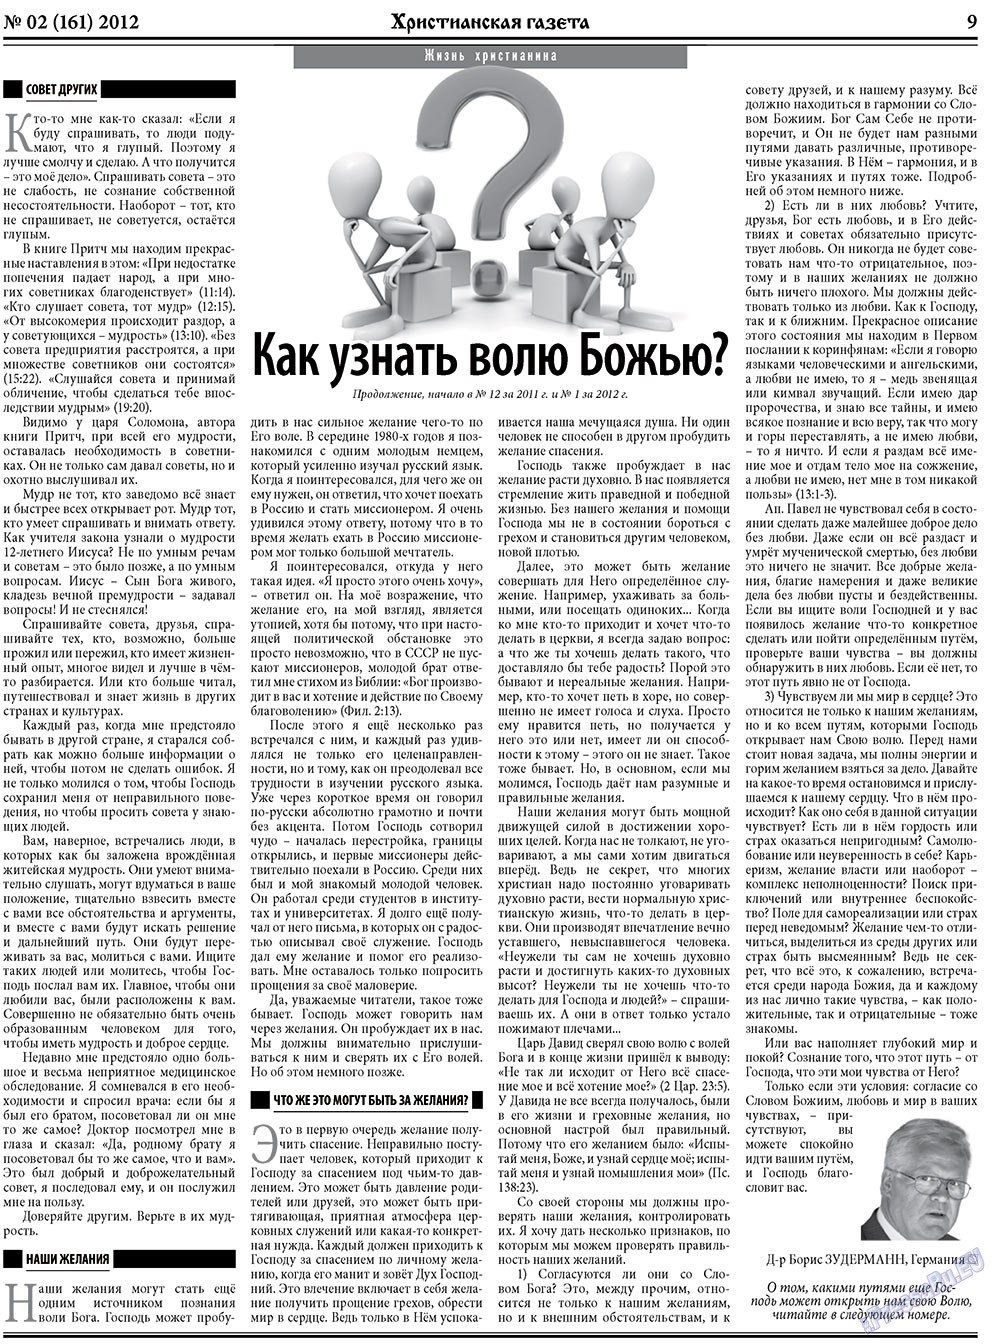 Христианская газета, газета. 2012 №2 стр.9